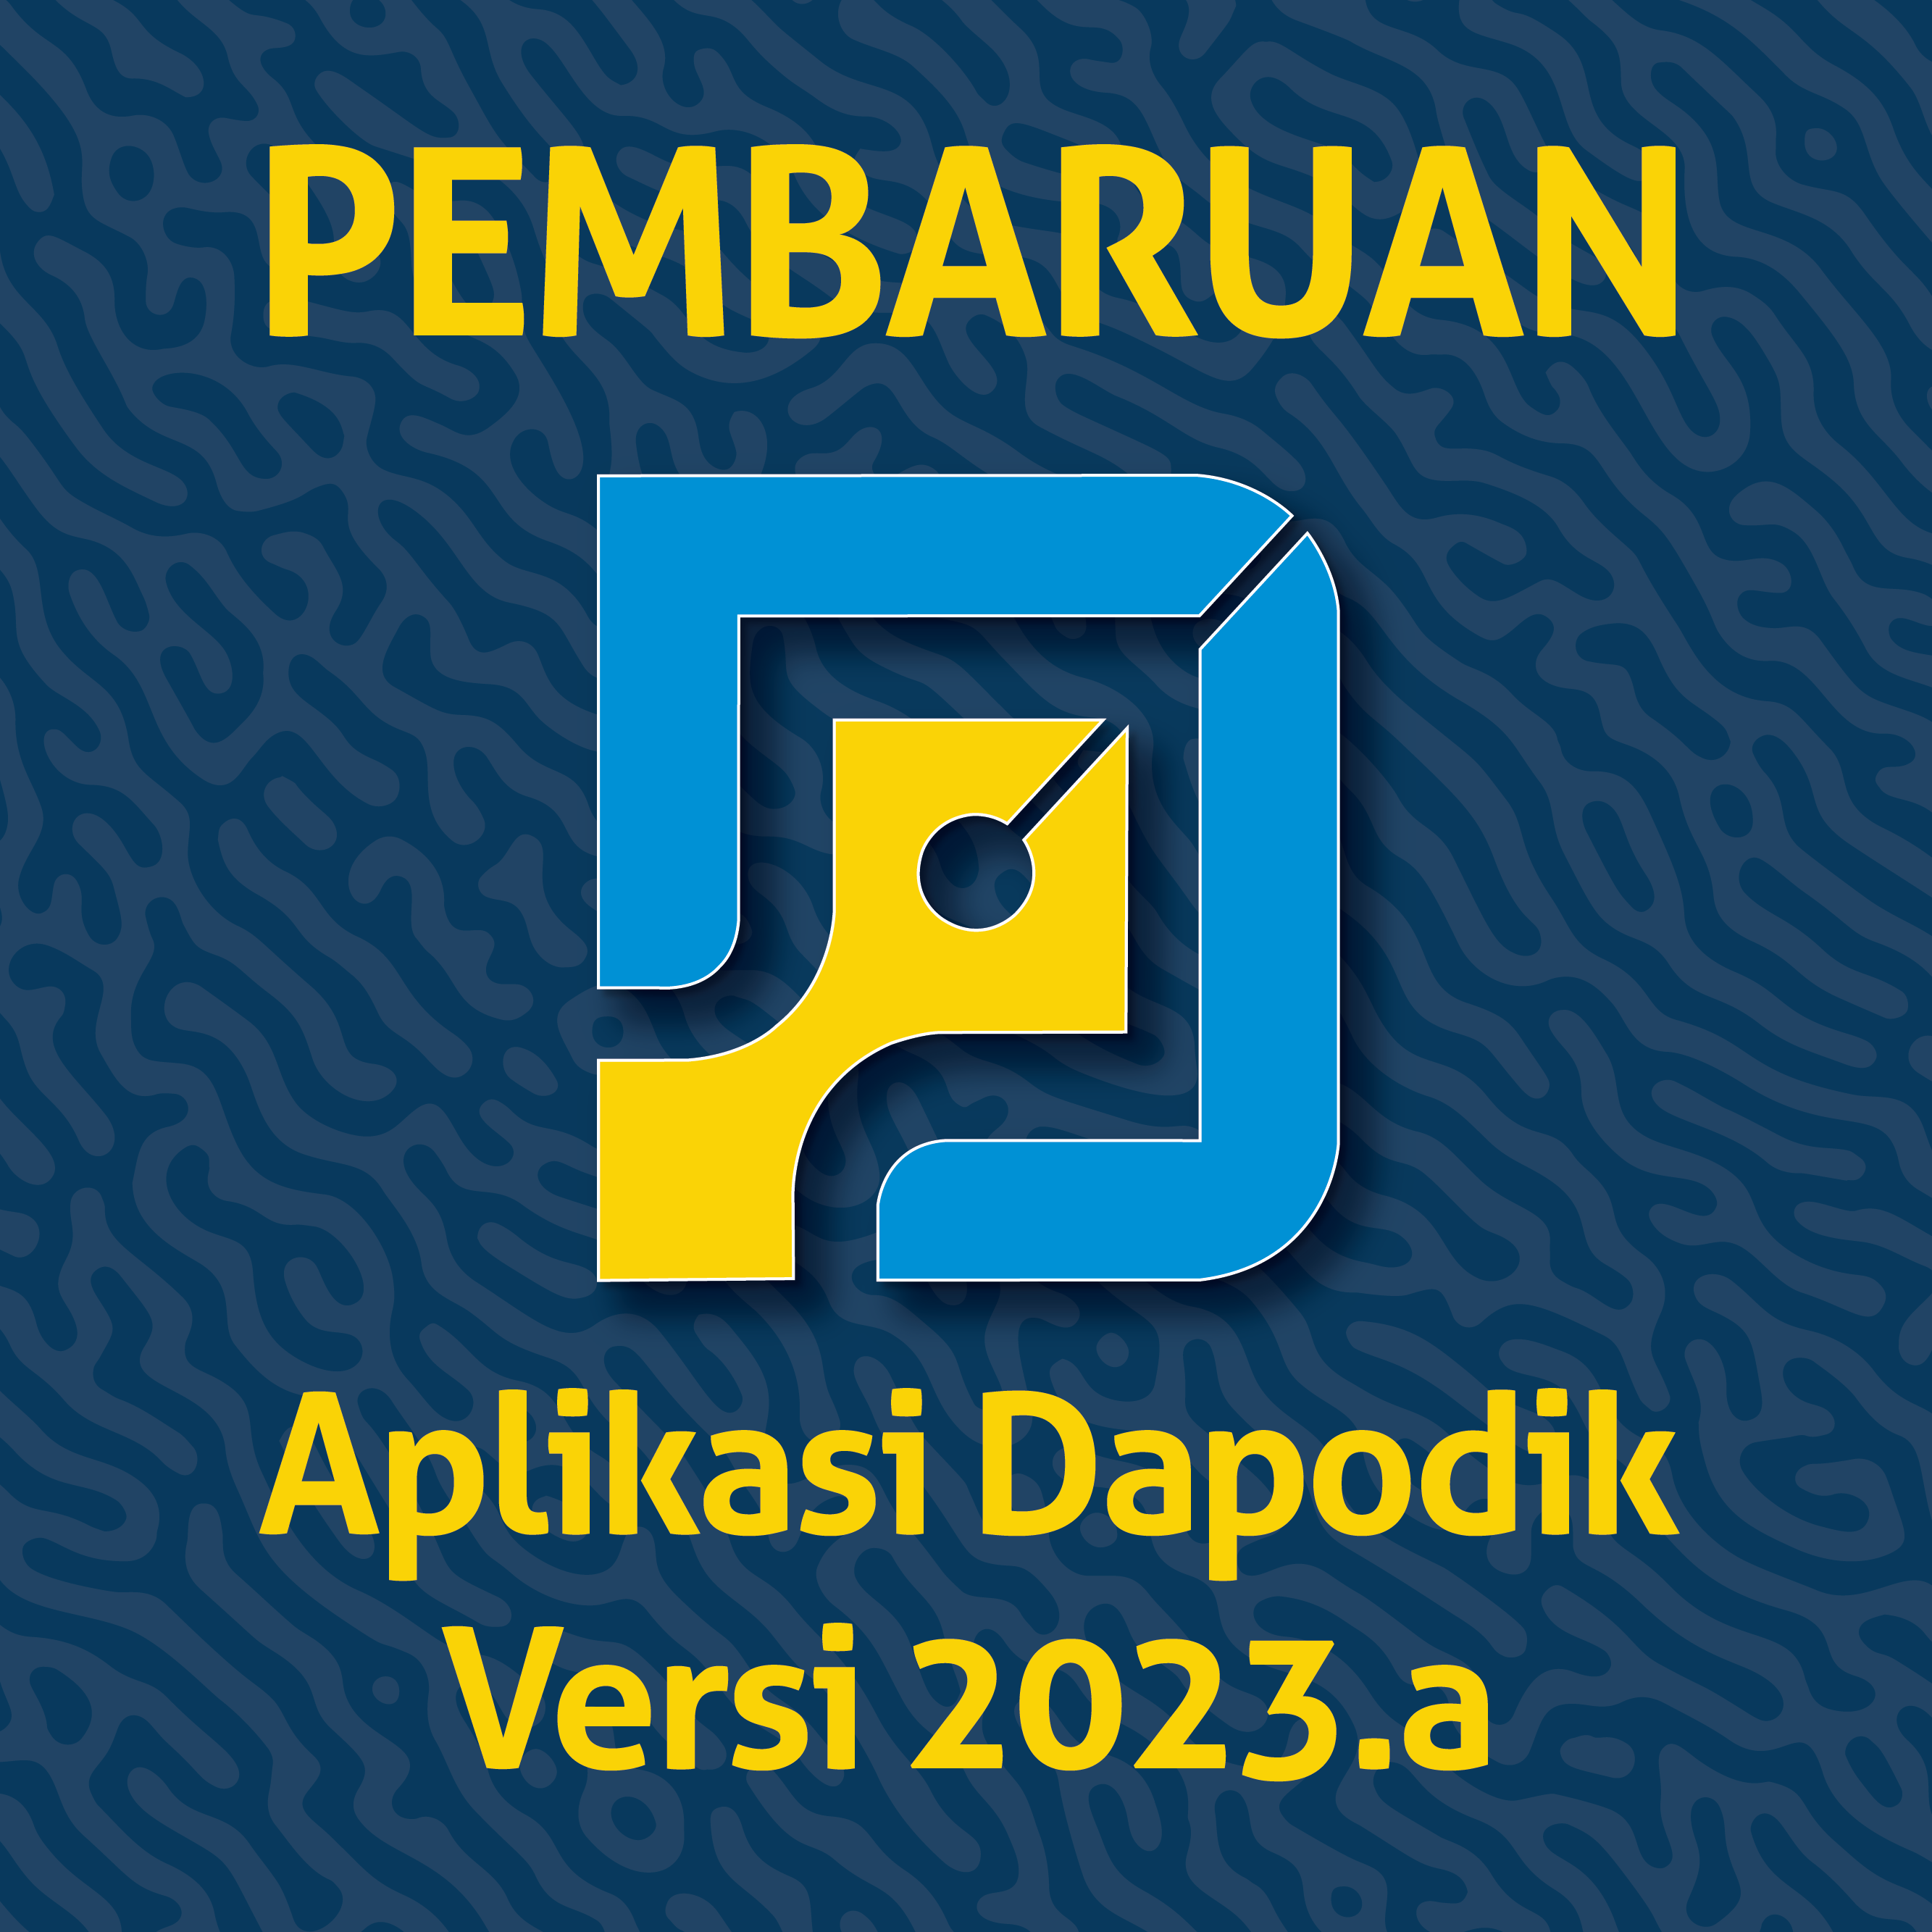 Rilis Perbaikan Aplikasi Dapodik Versi 2023.a